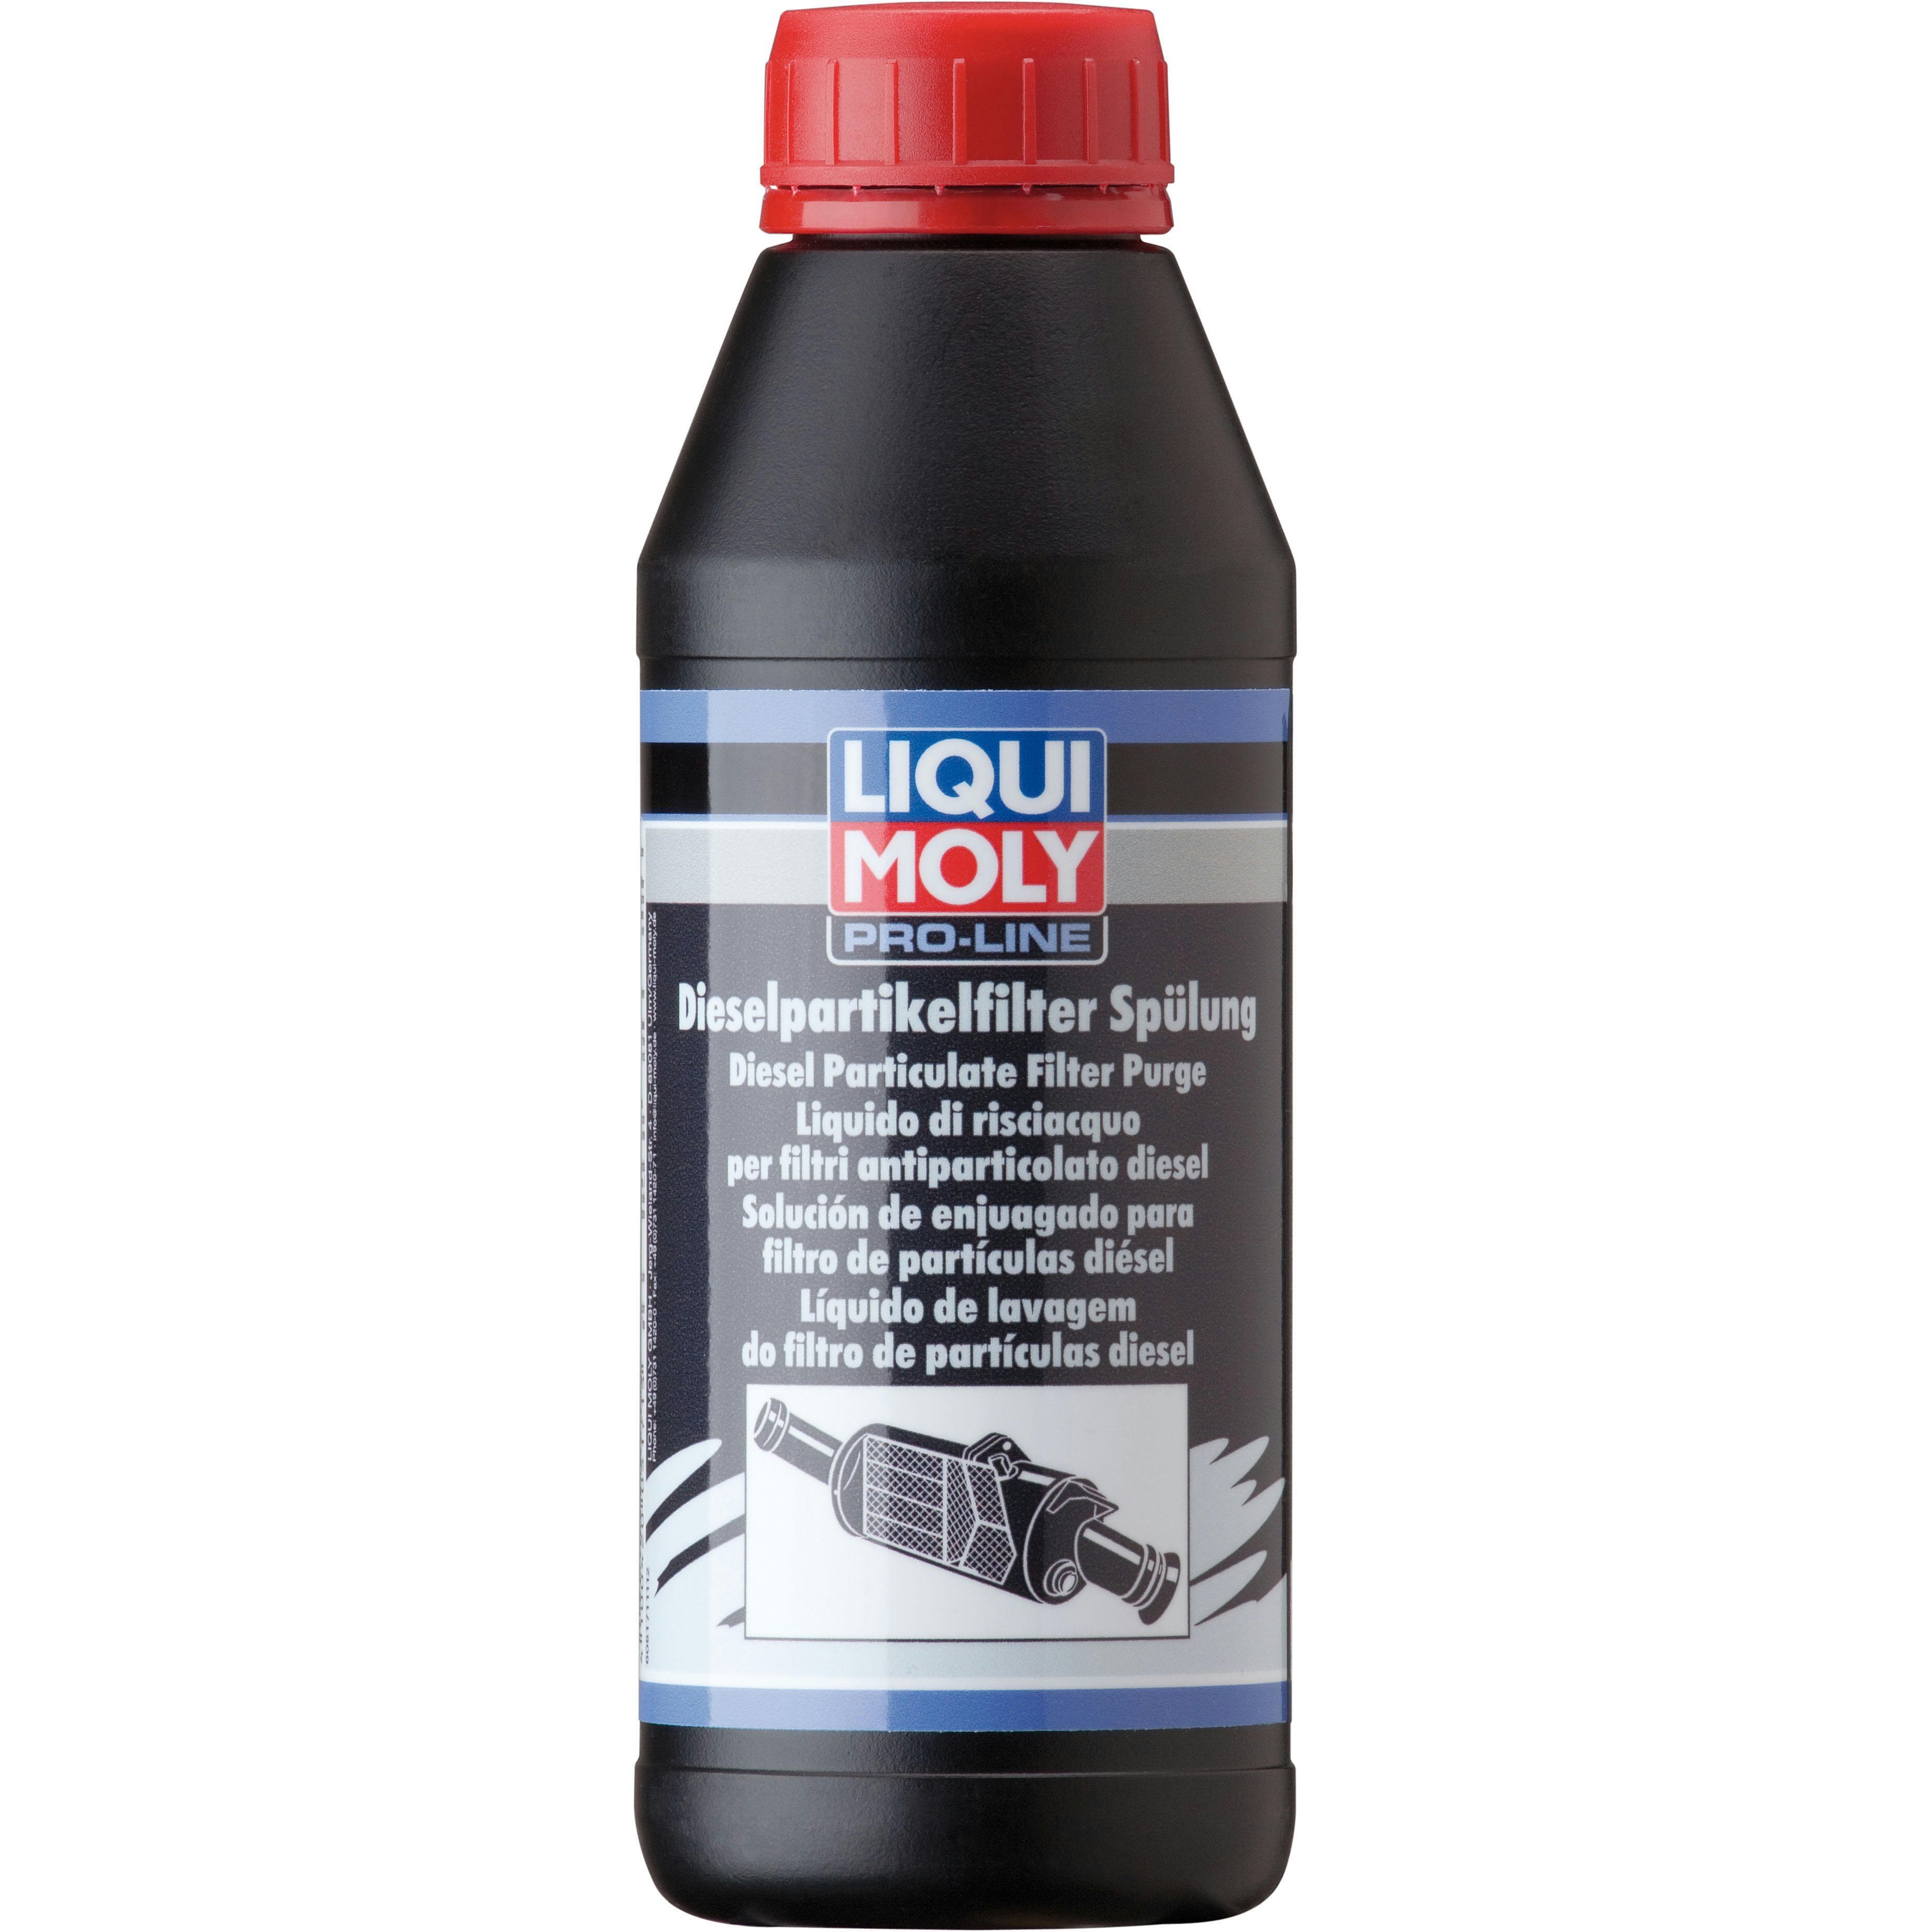 Очиститель Liqui Moly для очистки сажевых фильтров (смывка) Pro-Line Dpf Spulung 0,5л (4100420051715) фото 1